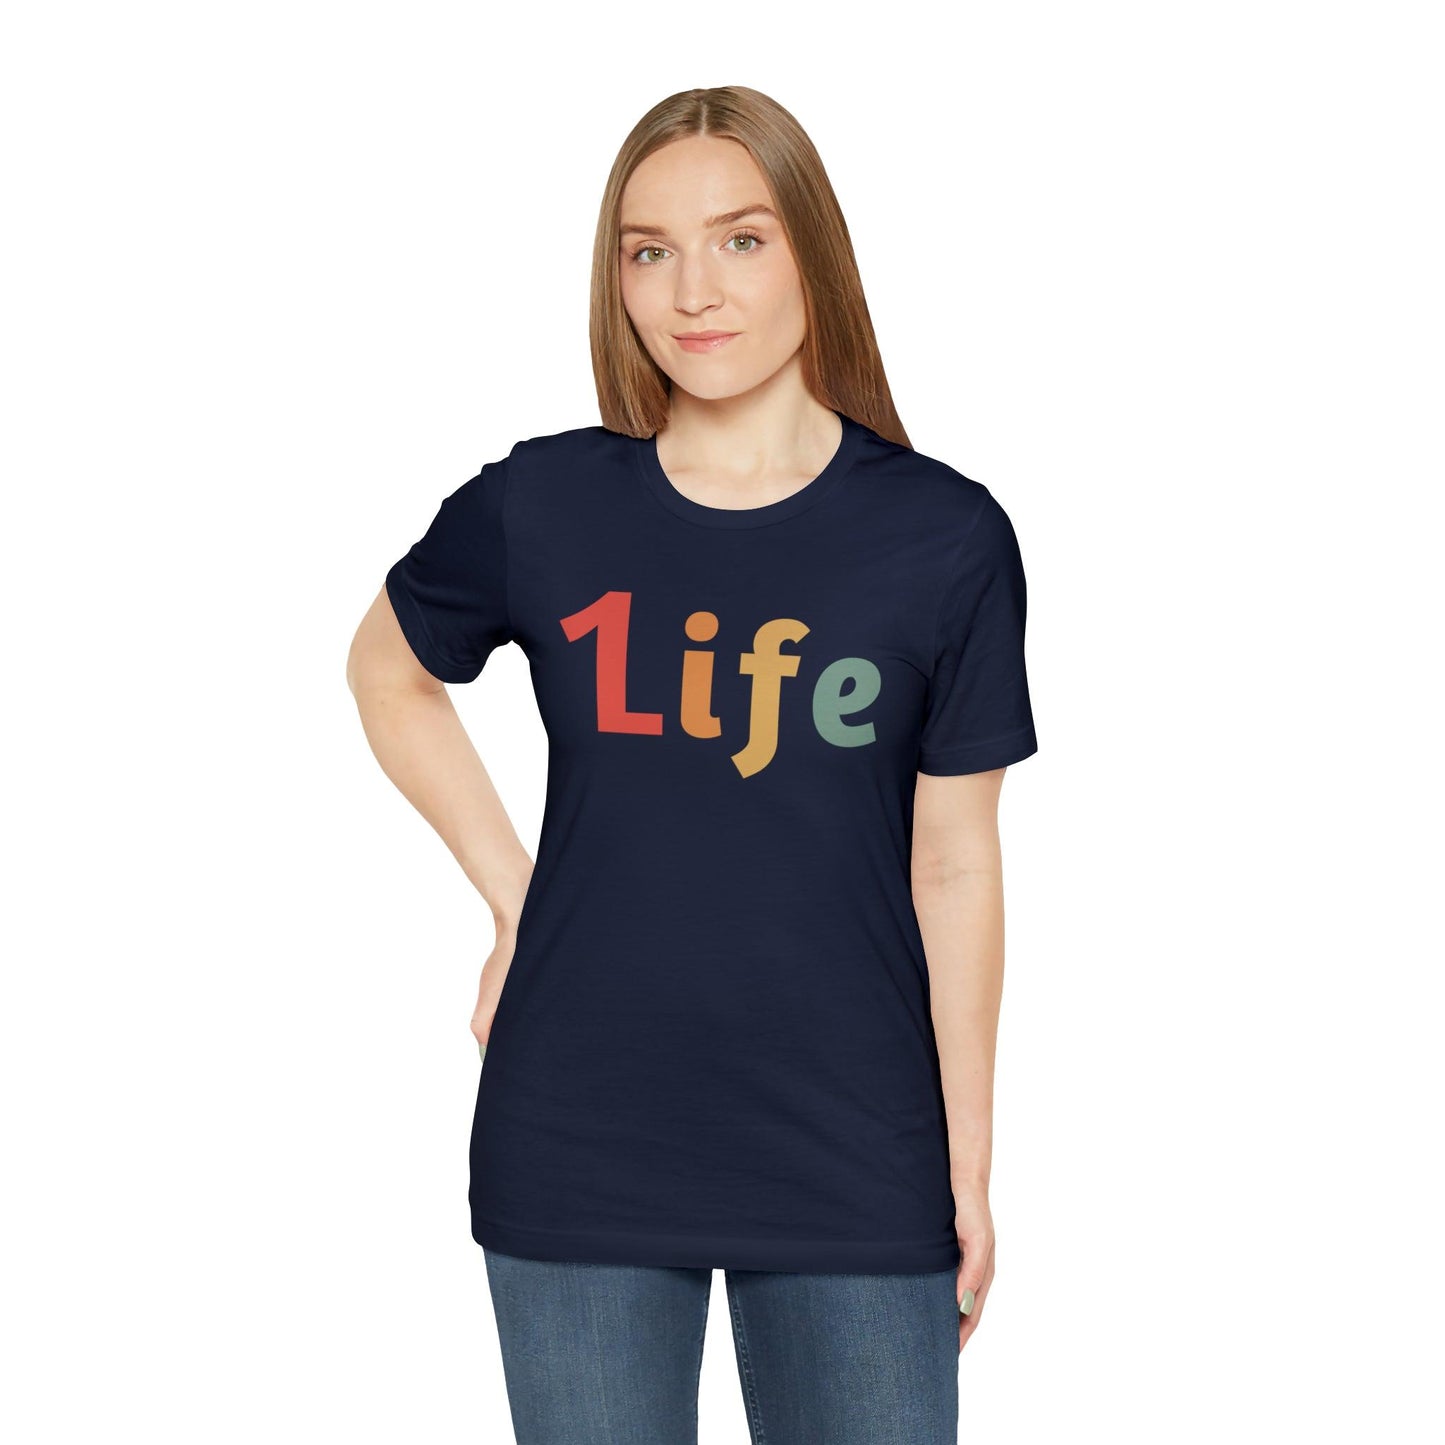 Retro One life Shirt 1life shirt Live Your Life You Only Have One Life To Live Retro Shirt - Giftsmojo